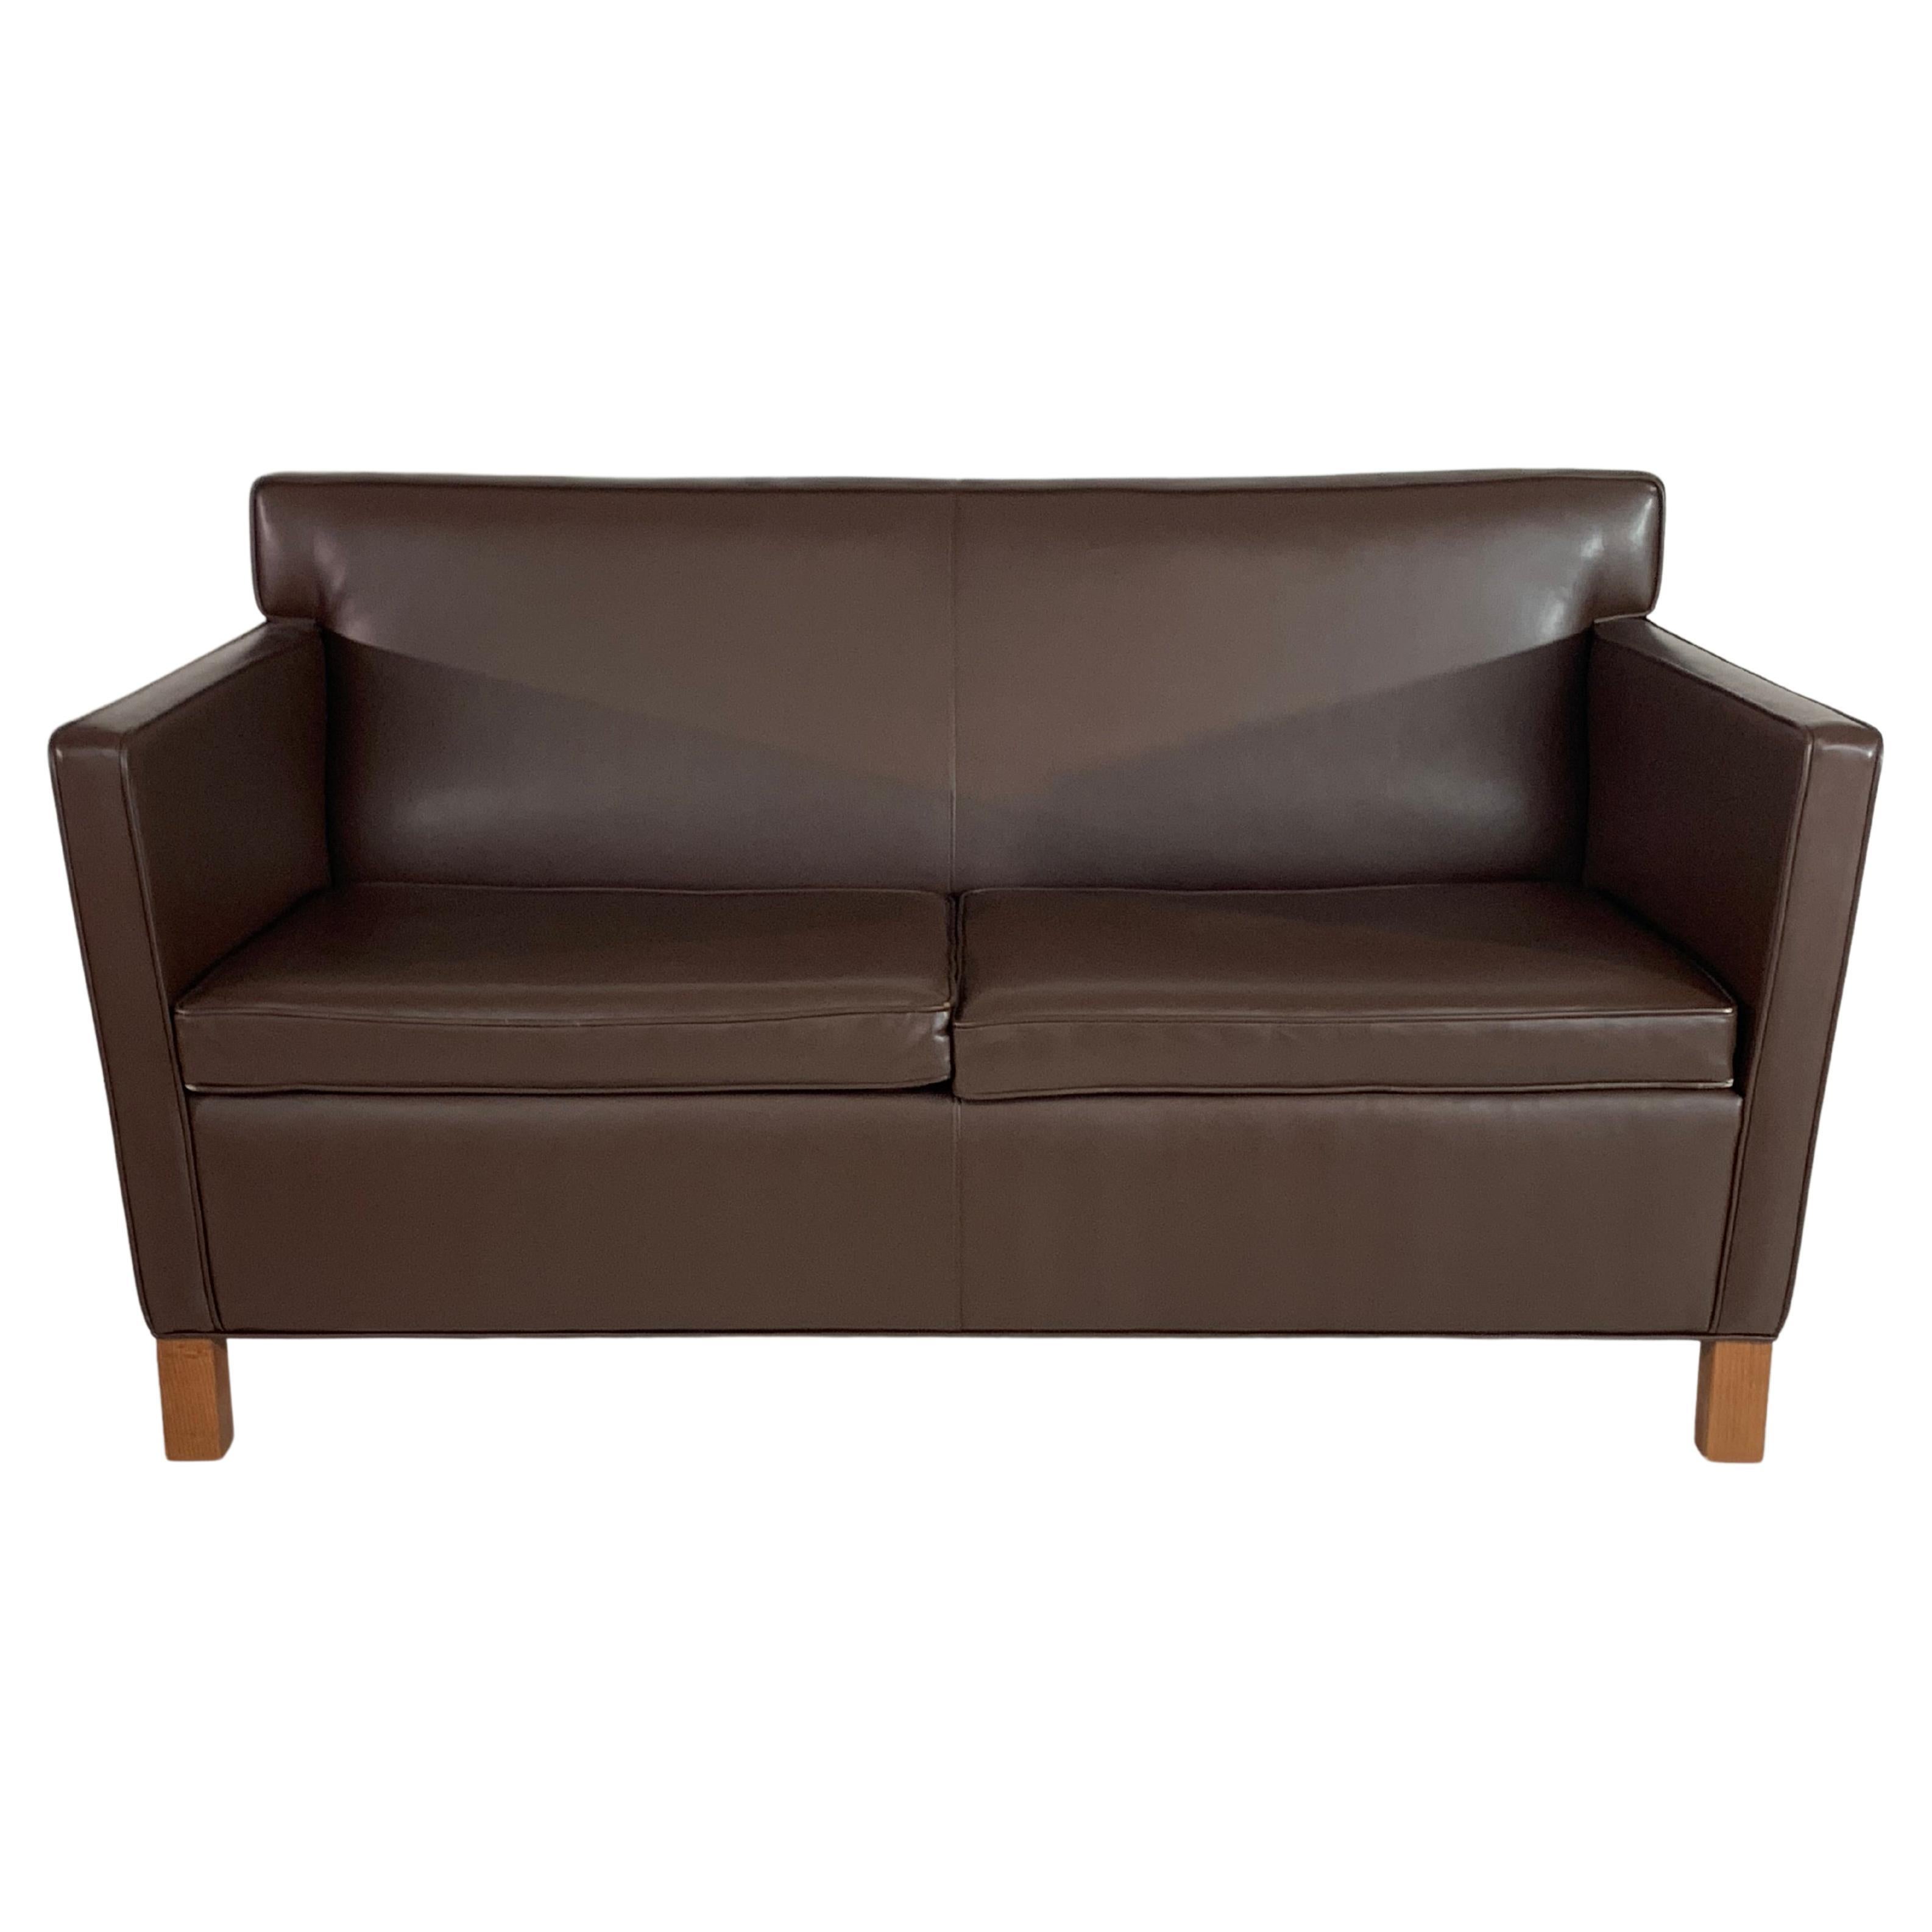 Ludwig Mies van der Rohe Krefeld Settee or Sofa in Dark Brown Leather for Knoll